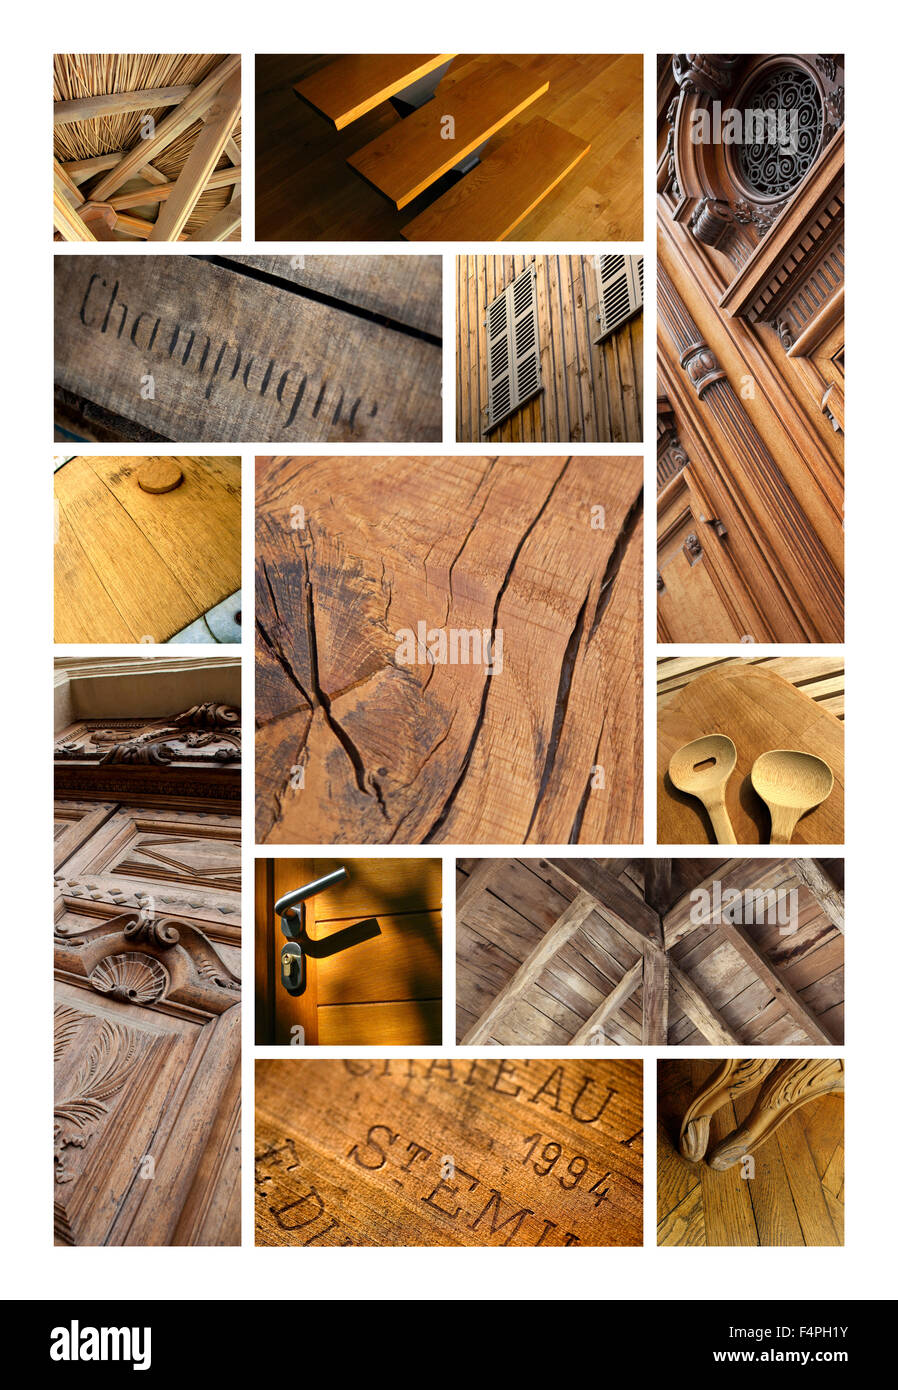 Image fonds en bois, les objets et l'architecture sur un collage Banque D'Images